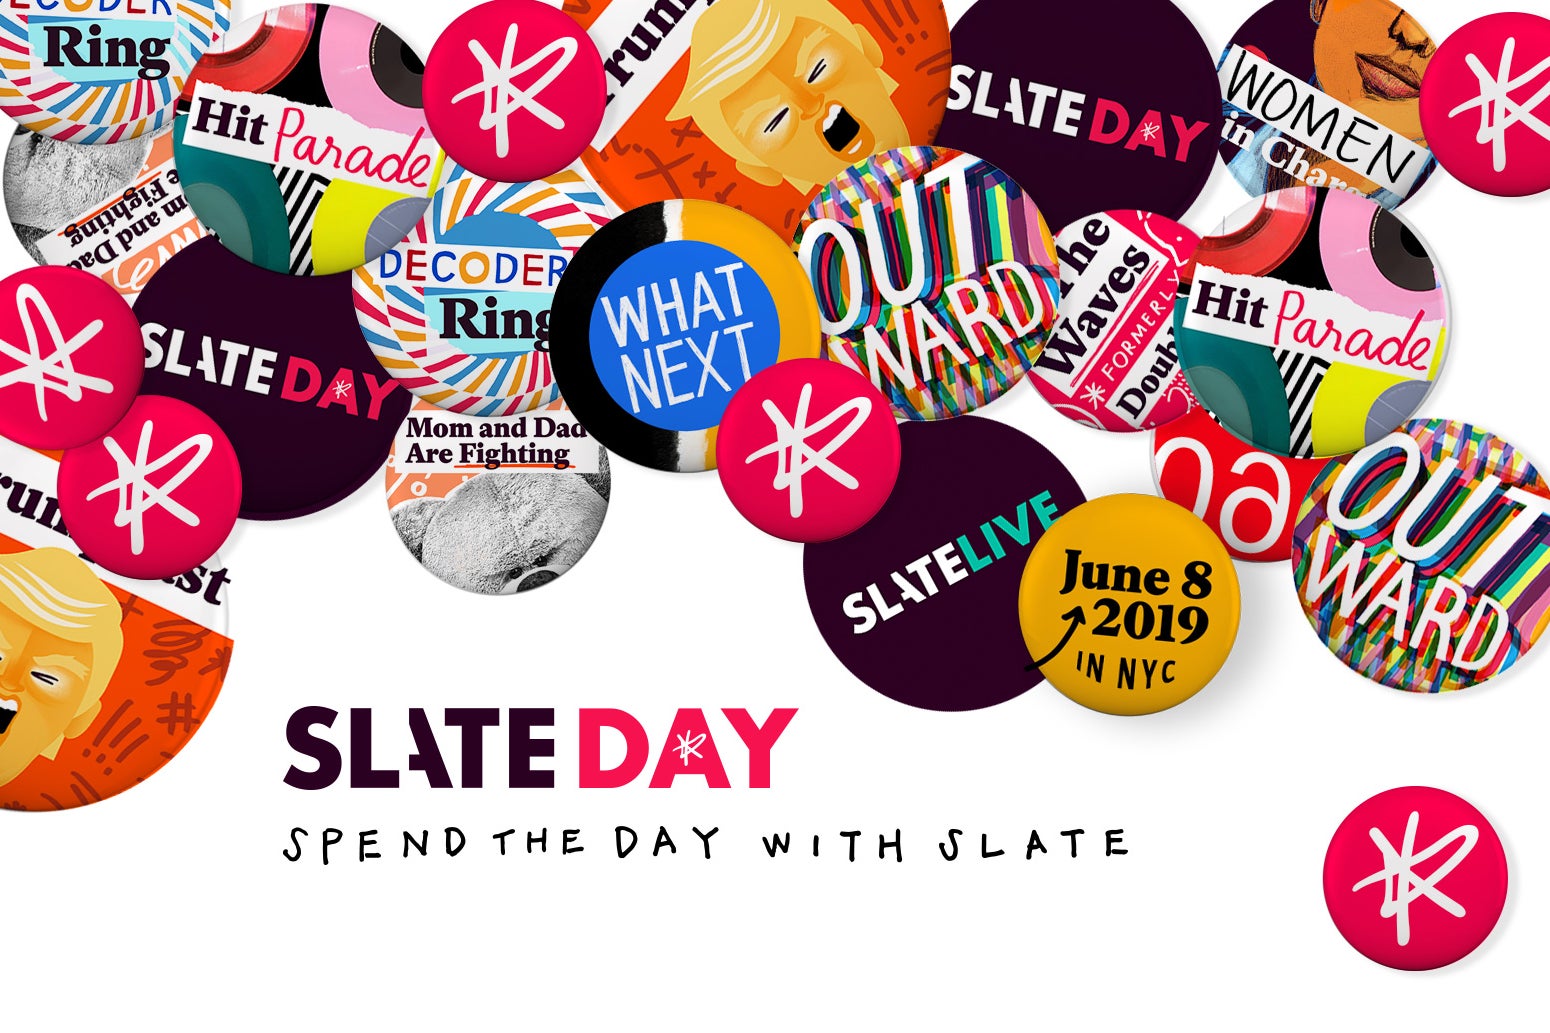 Slate Day 2019 